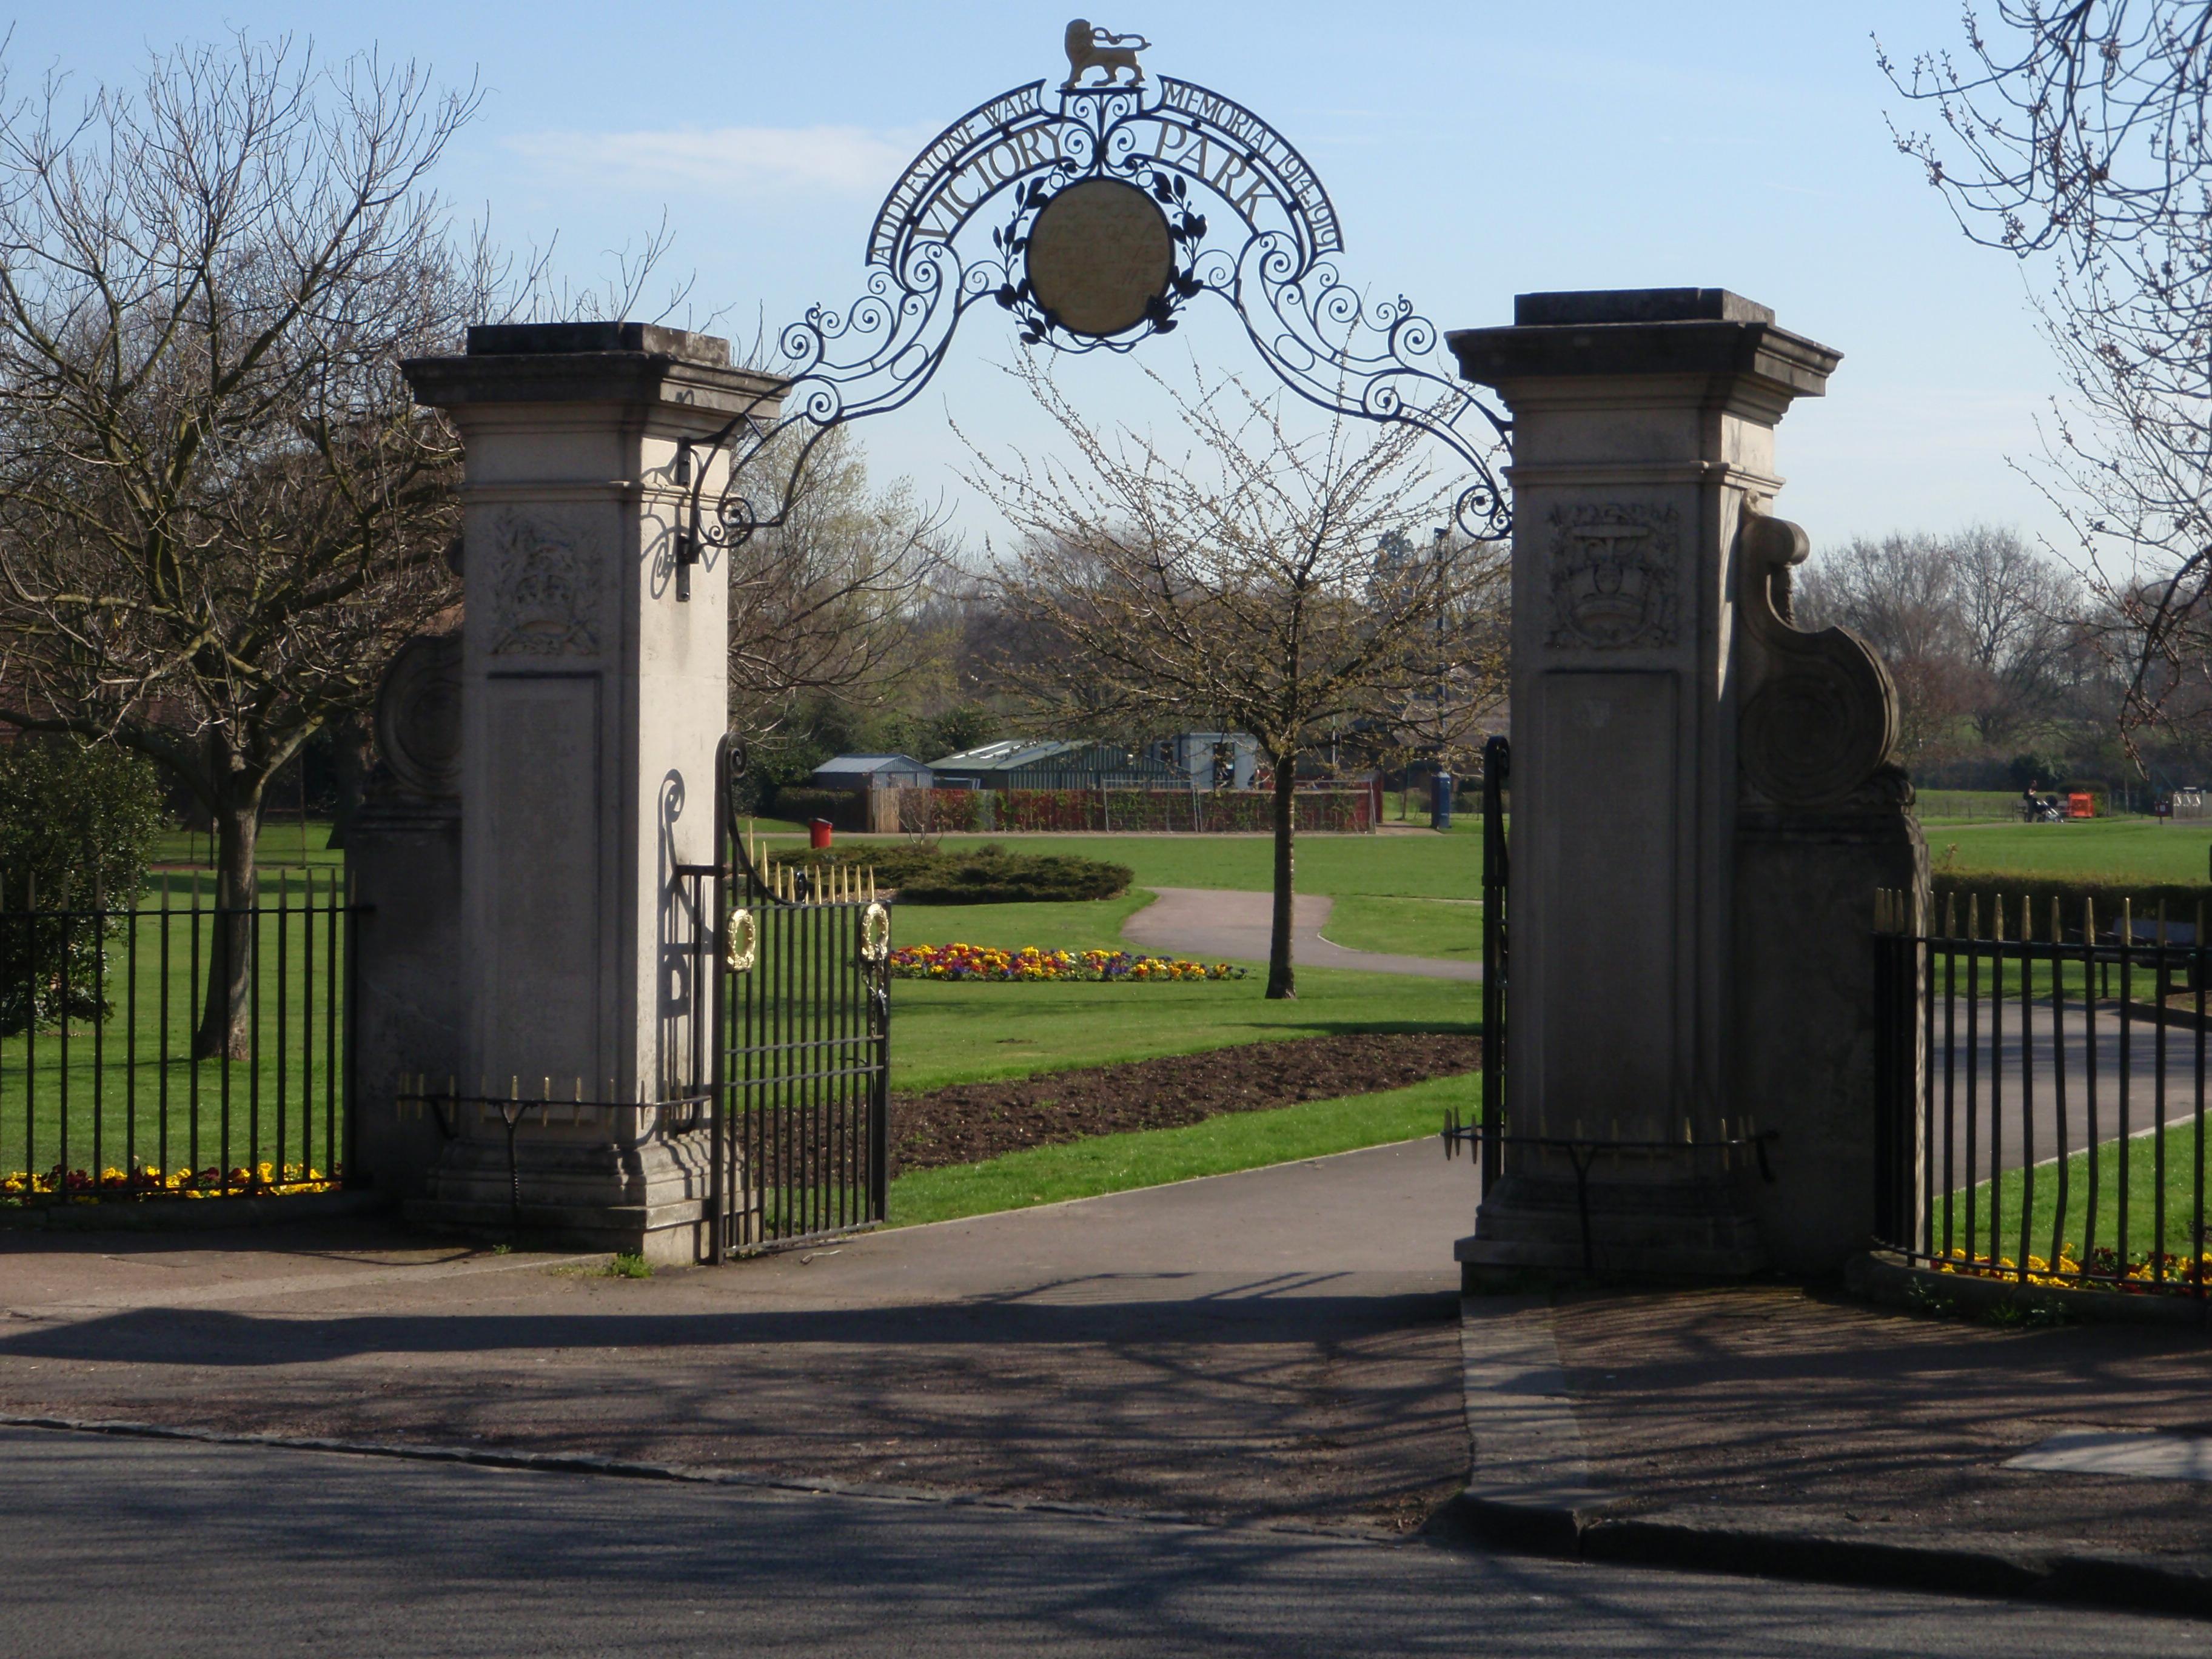 Victory park gates